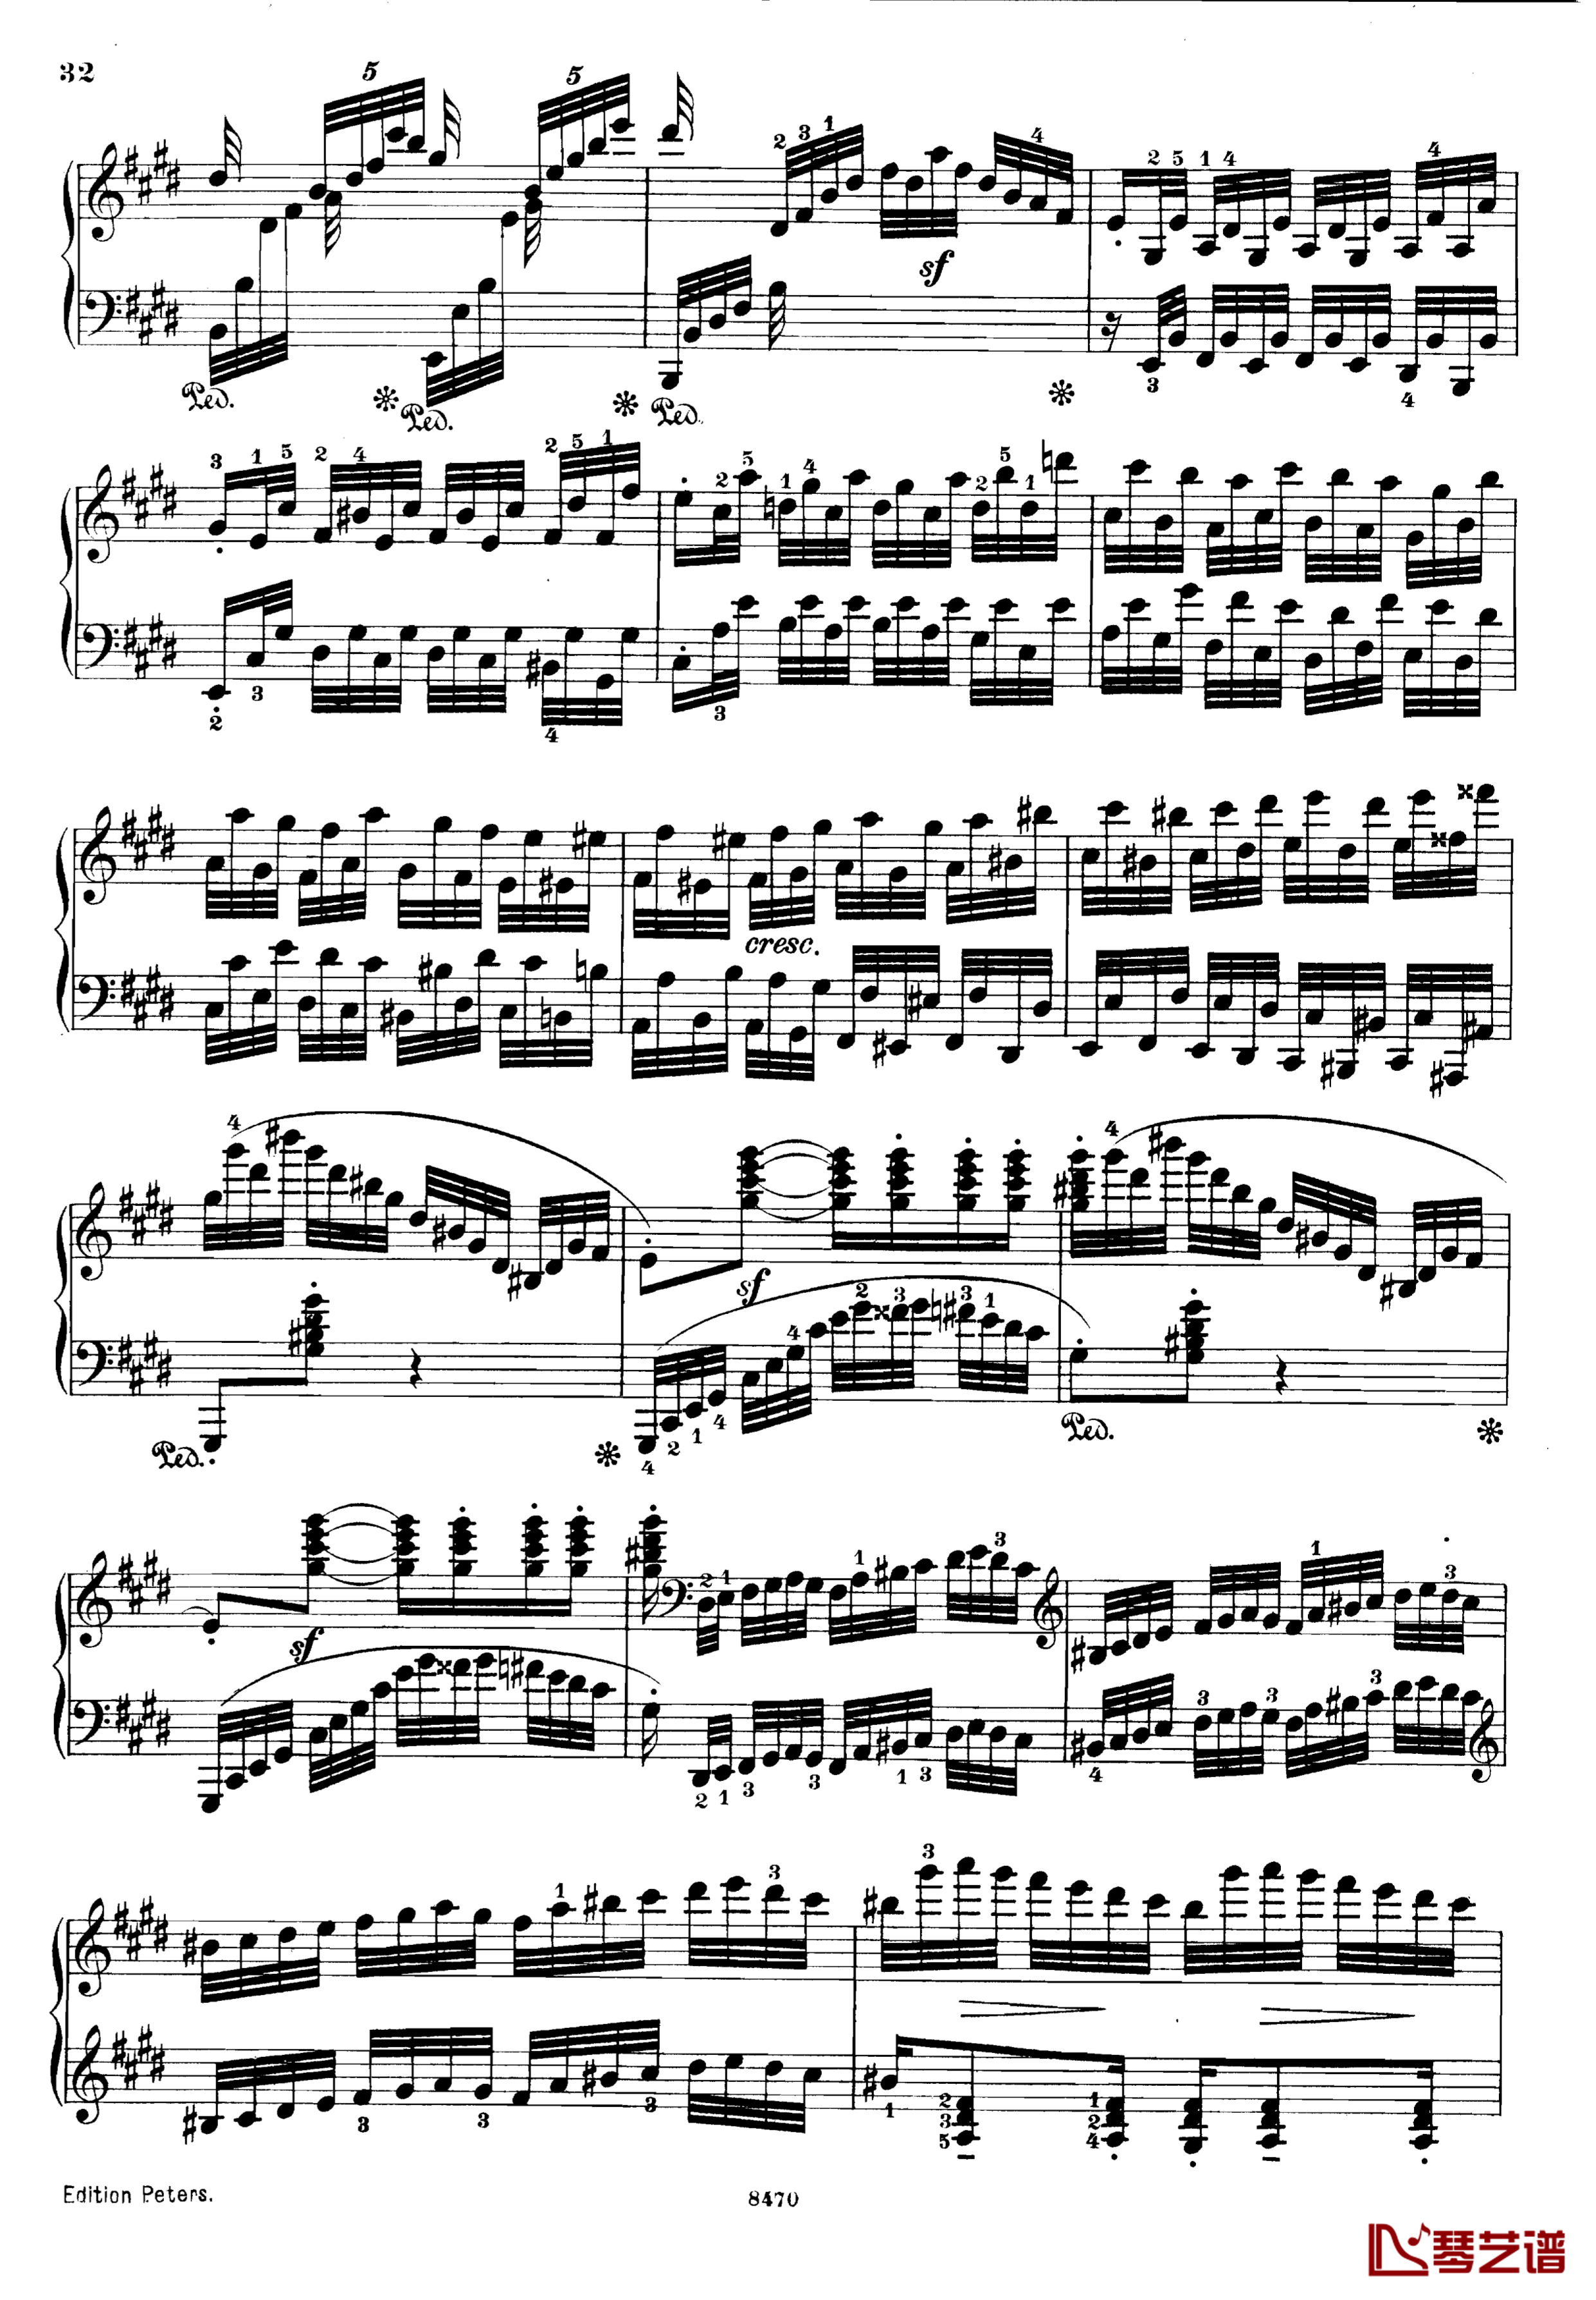 升c小调第三钢琴协奏曲Op.55钢琴谱-克里斯蒂安-里斯32